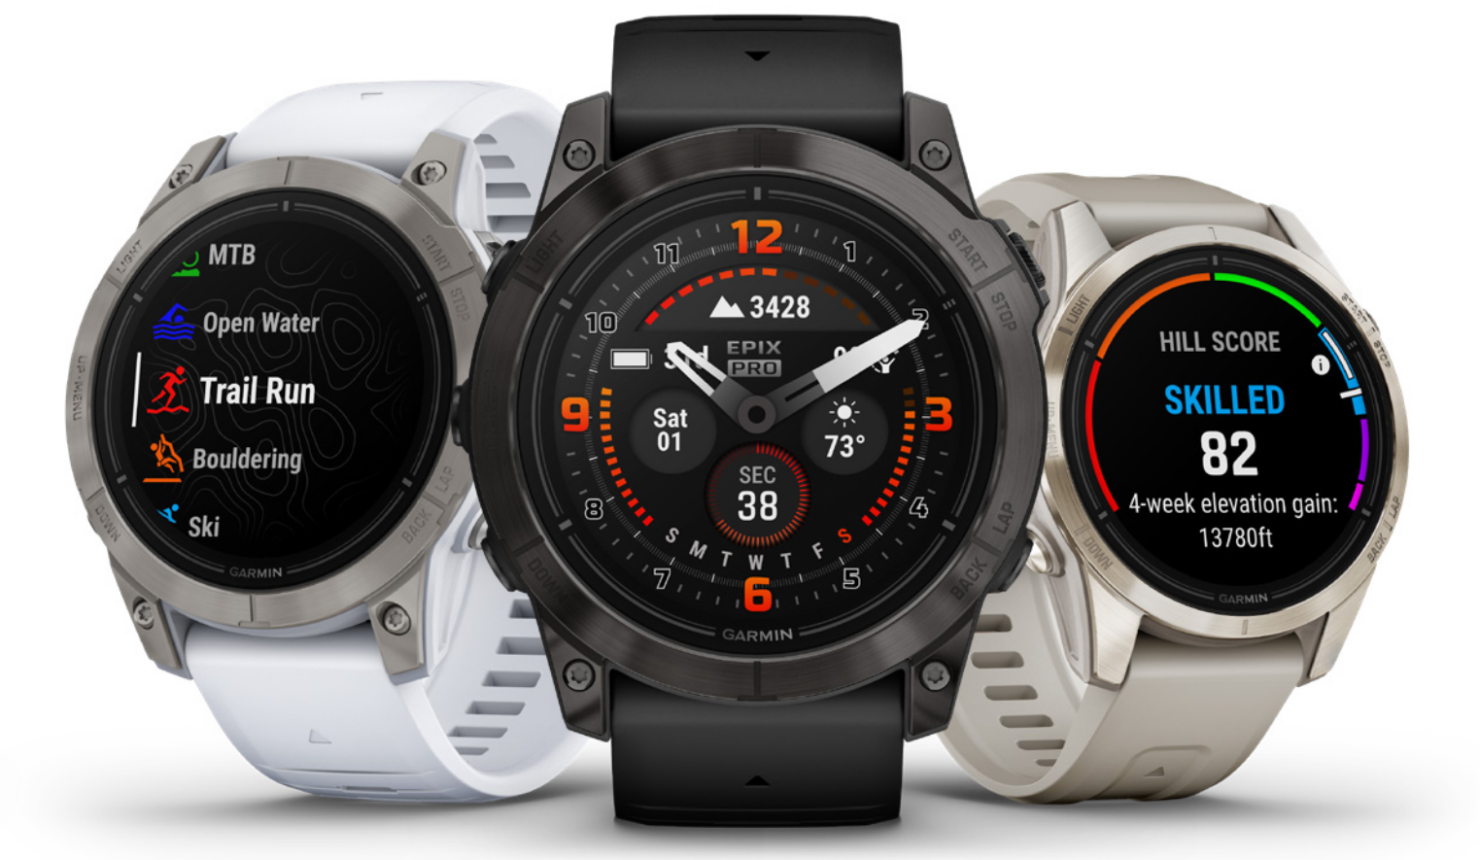 Garmin announces the epix Pro smartwatches next-gen of Series